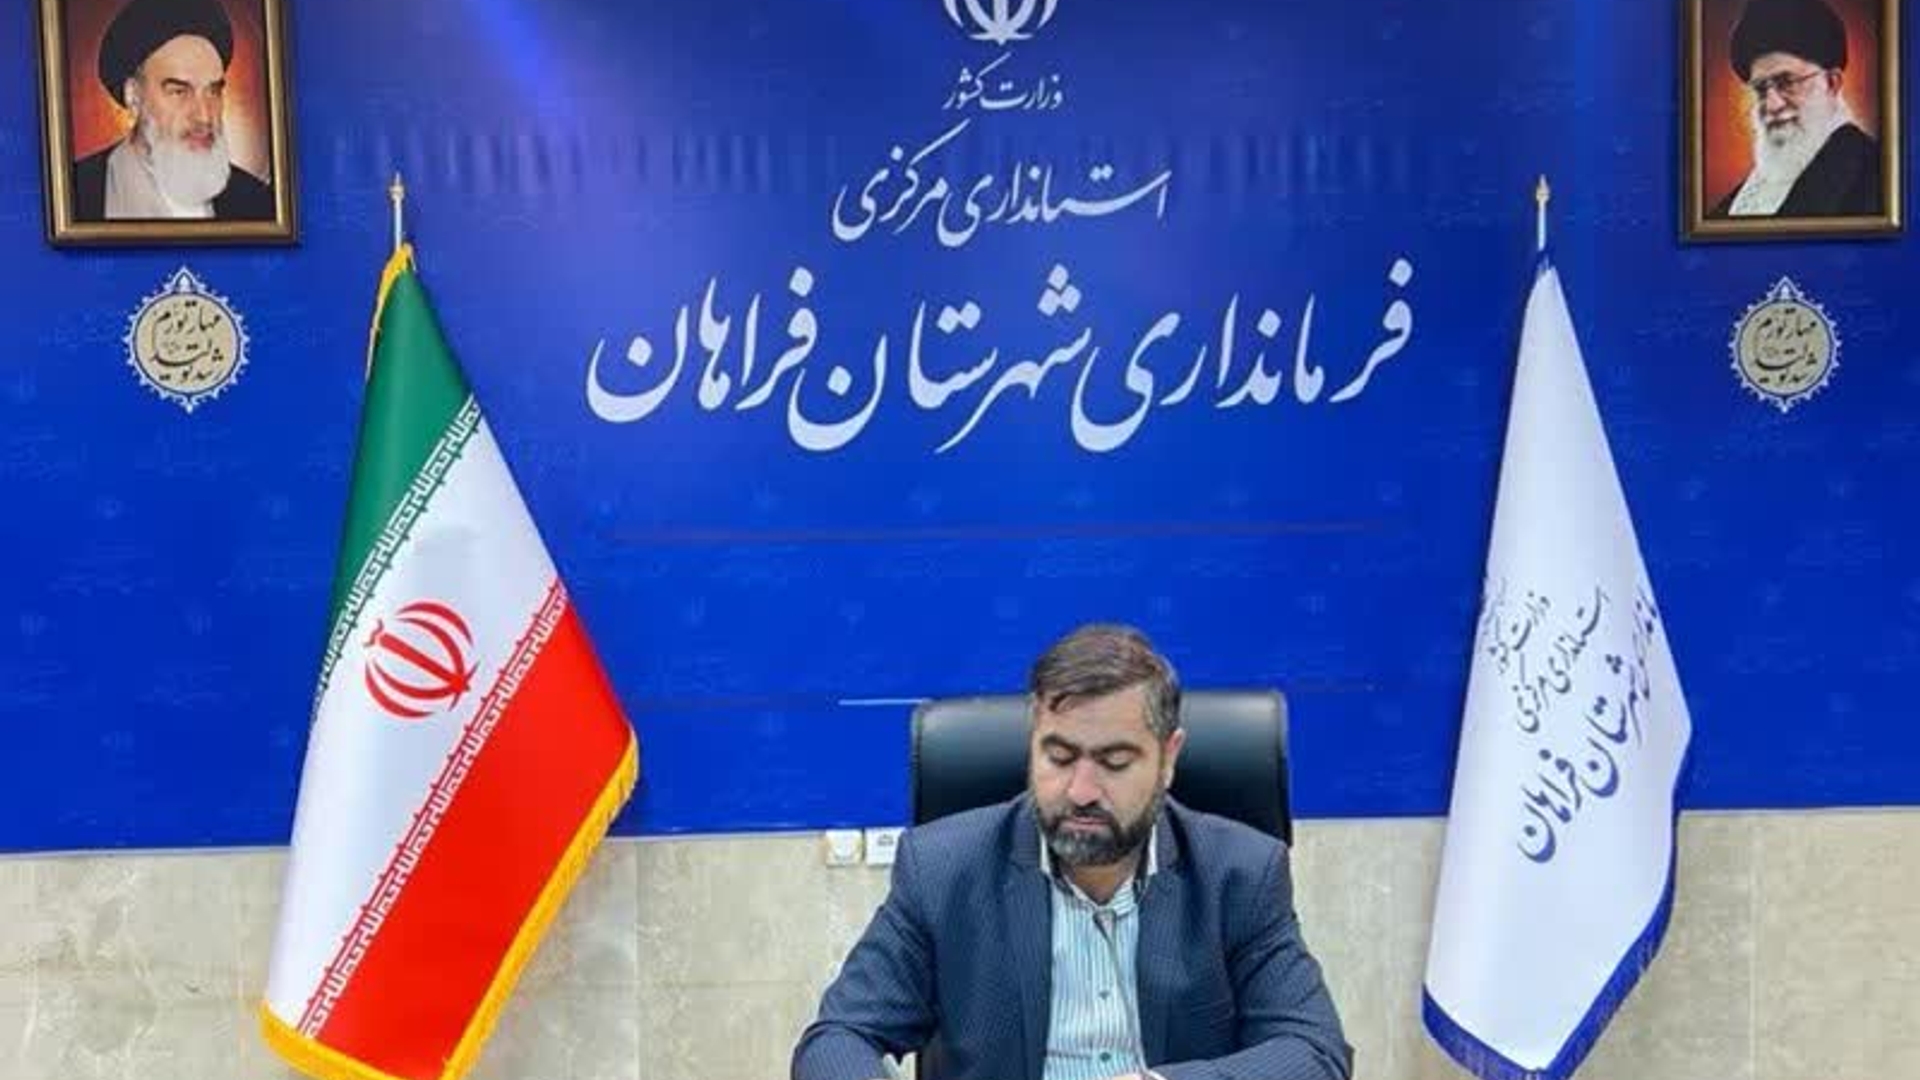 پیام تبریک آقازیارتی فرماندار شهرستان فراهان به مناسبت گرامیداشت روز شوراها